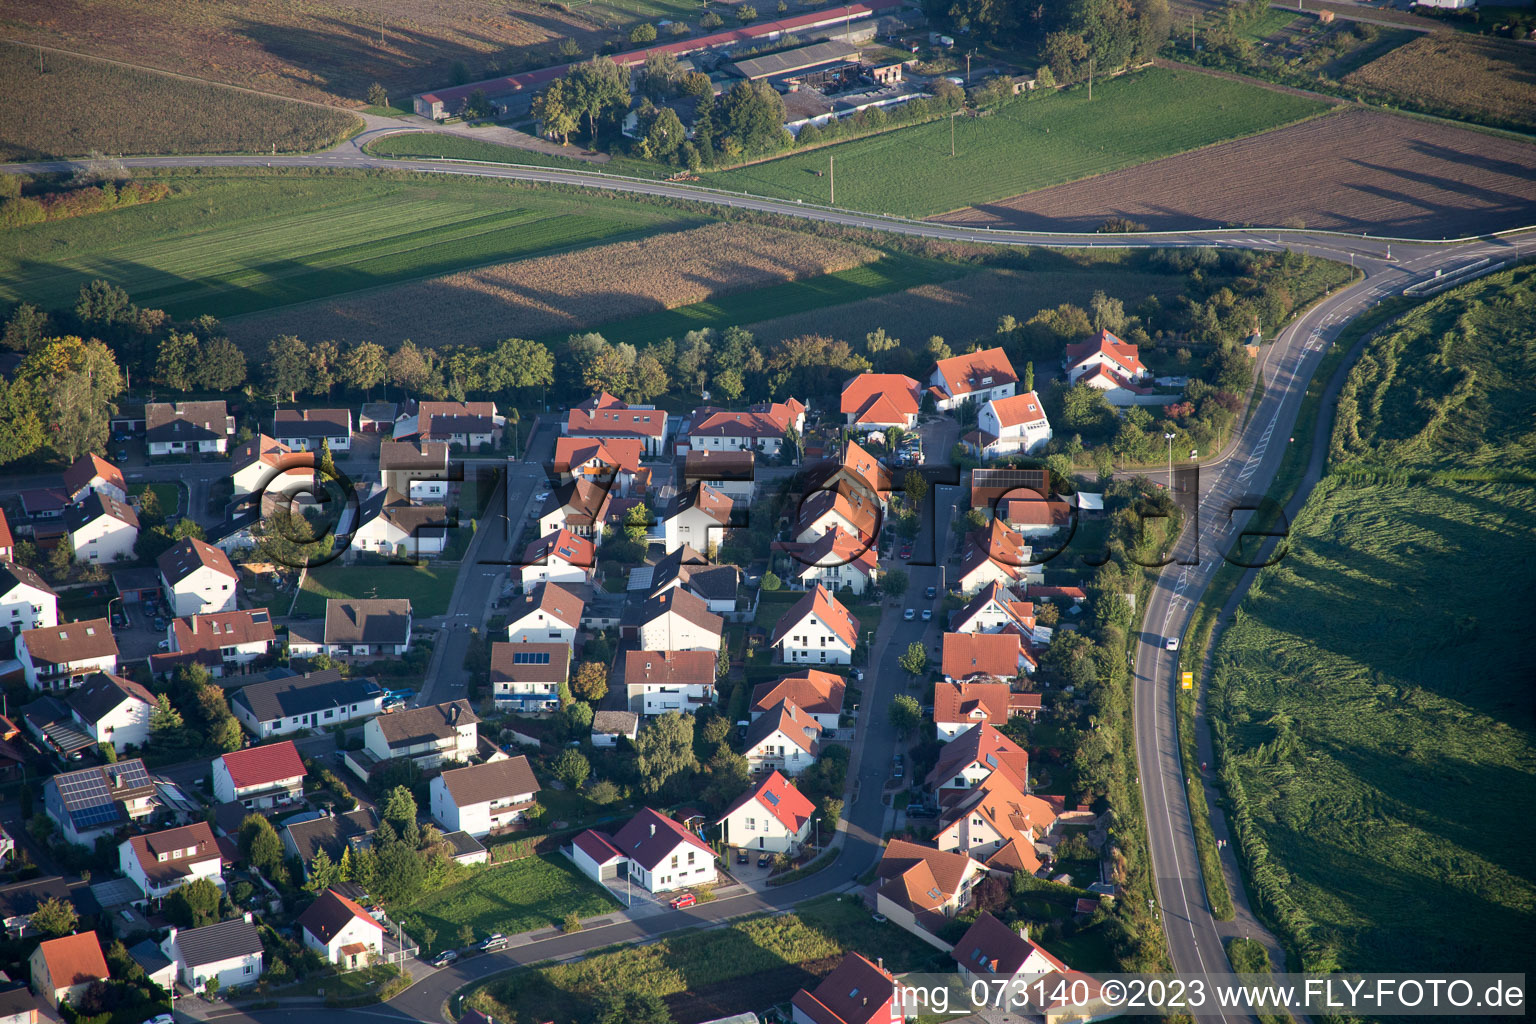 Hardtwald im Bundesland Rheinland-Pfalz, Deutschland aus der Luft betrachtet